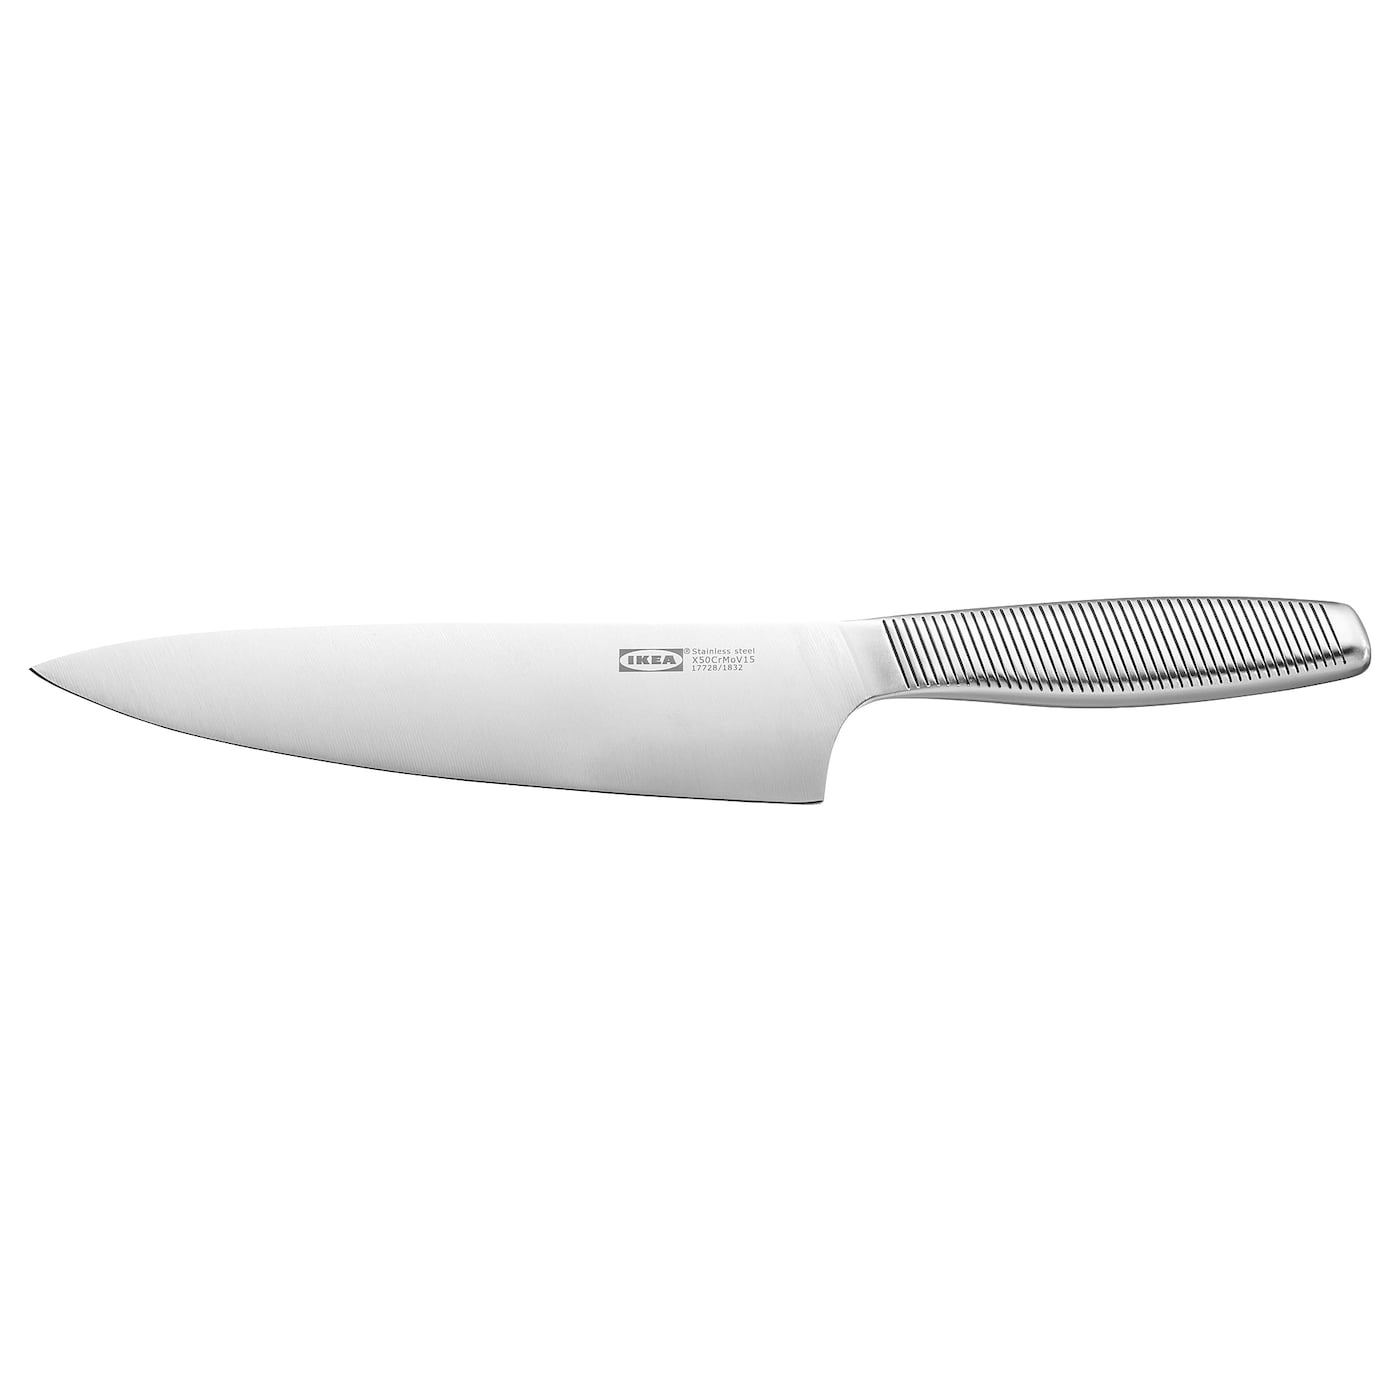 IKEA 365+ ИКЕА/365+ Нож поварской, нержавеющ сталь, 20 см IKEA